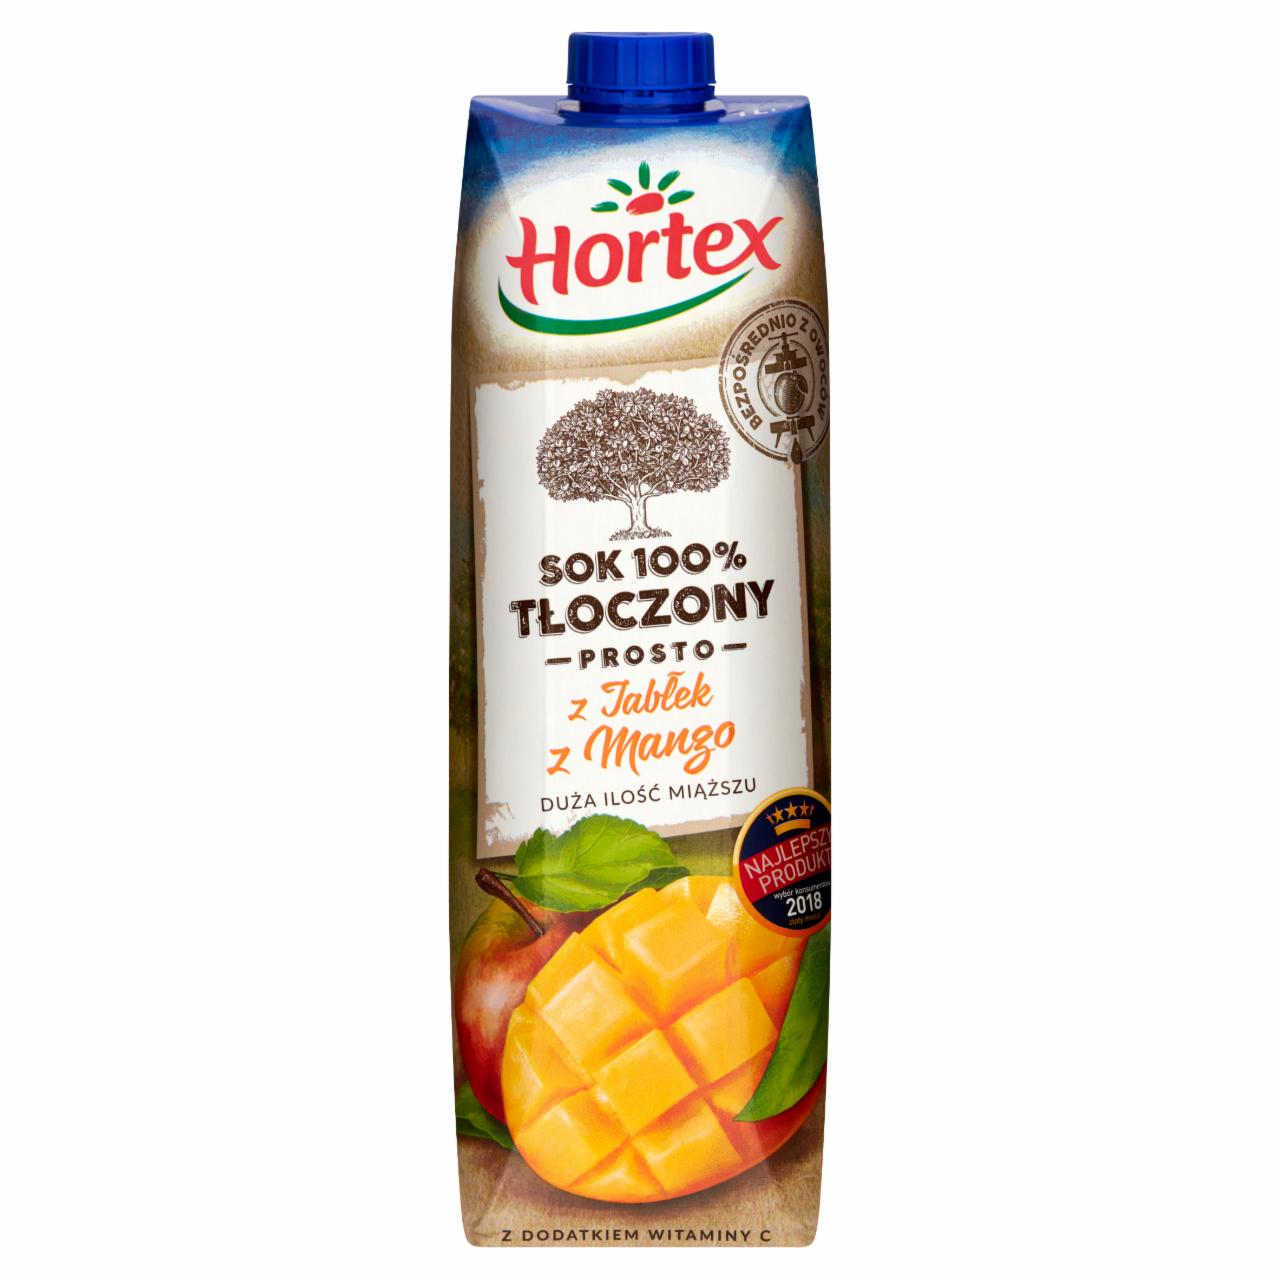 Zdjęcia - Hortex Sok 100% tłoczony prosto z jabłek z mango 1 l